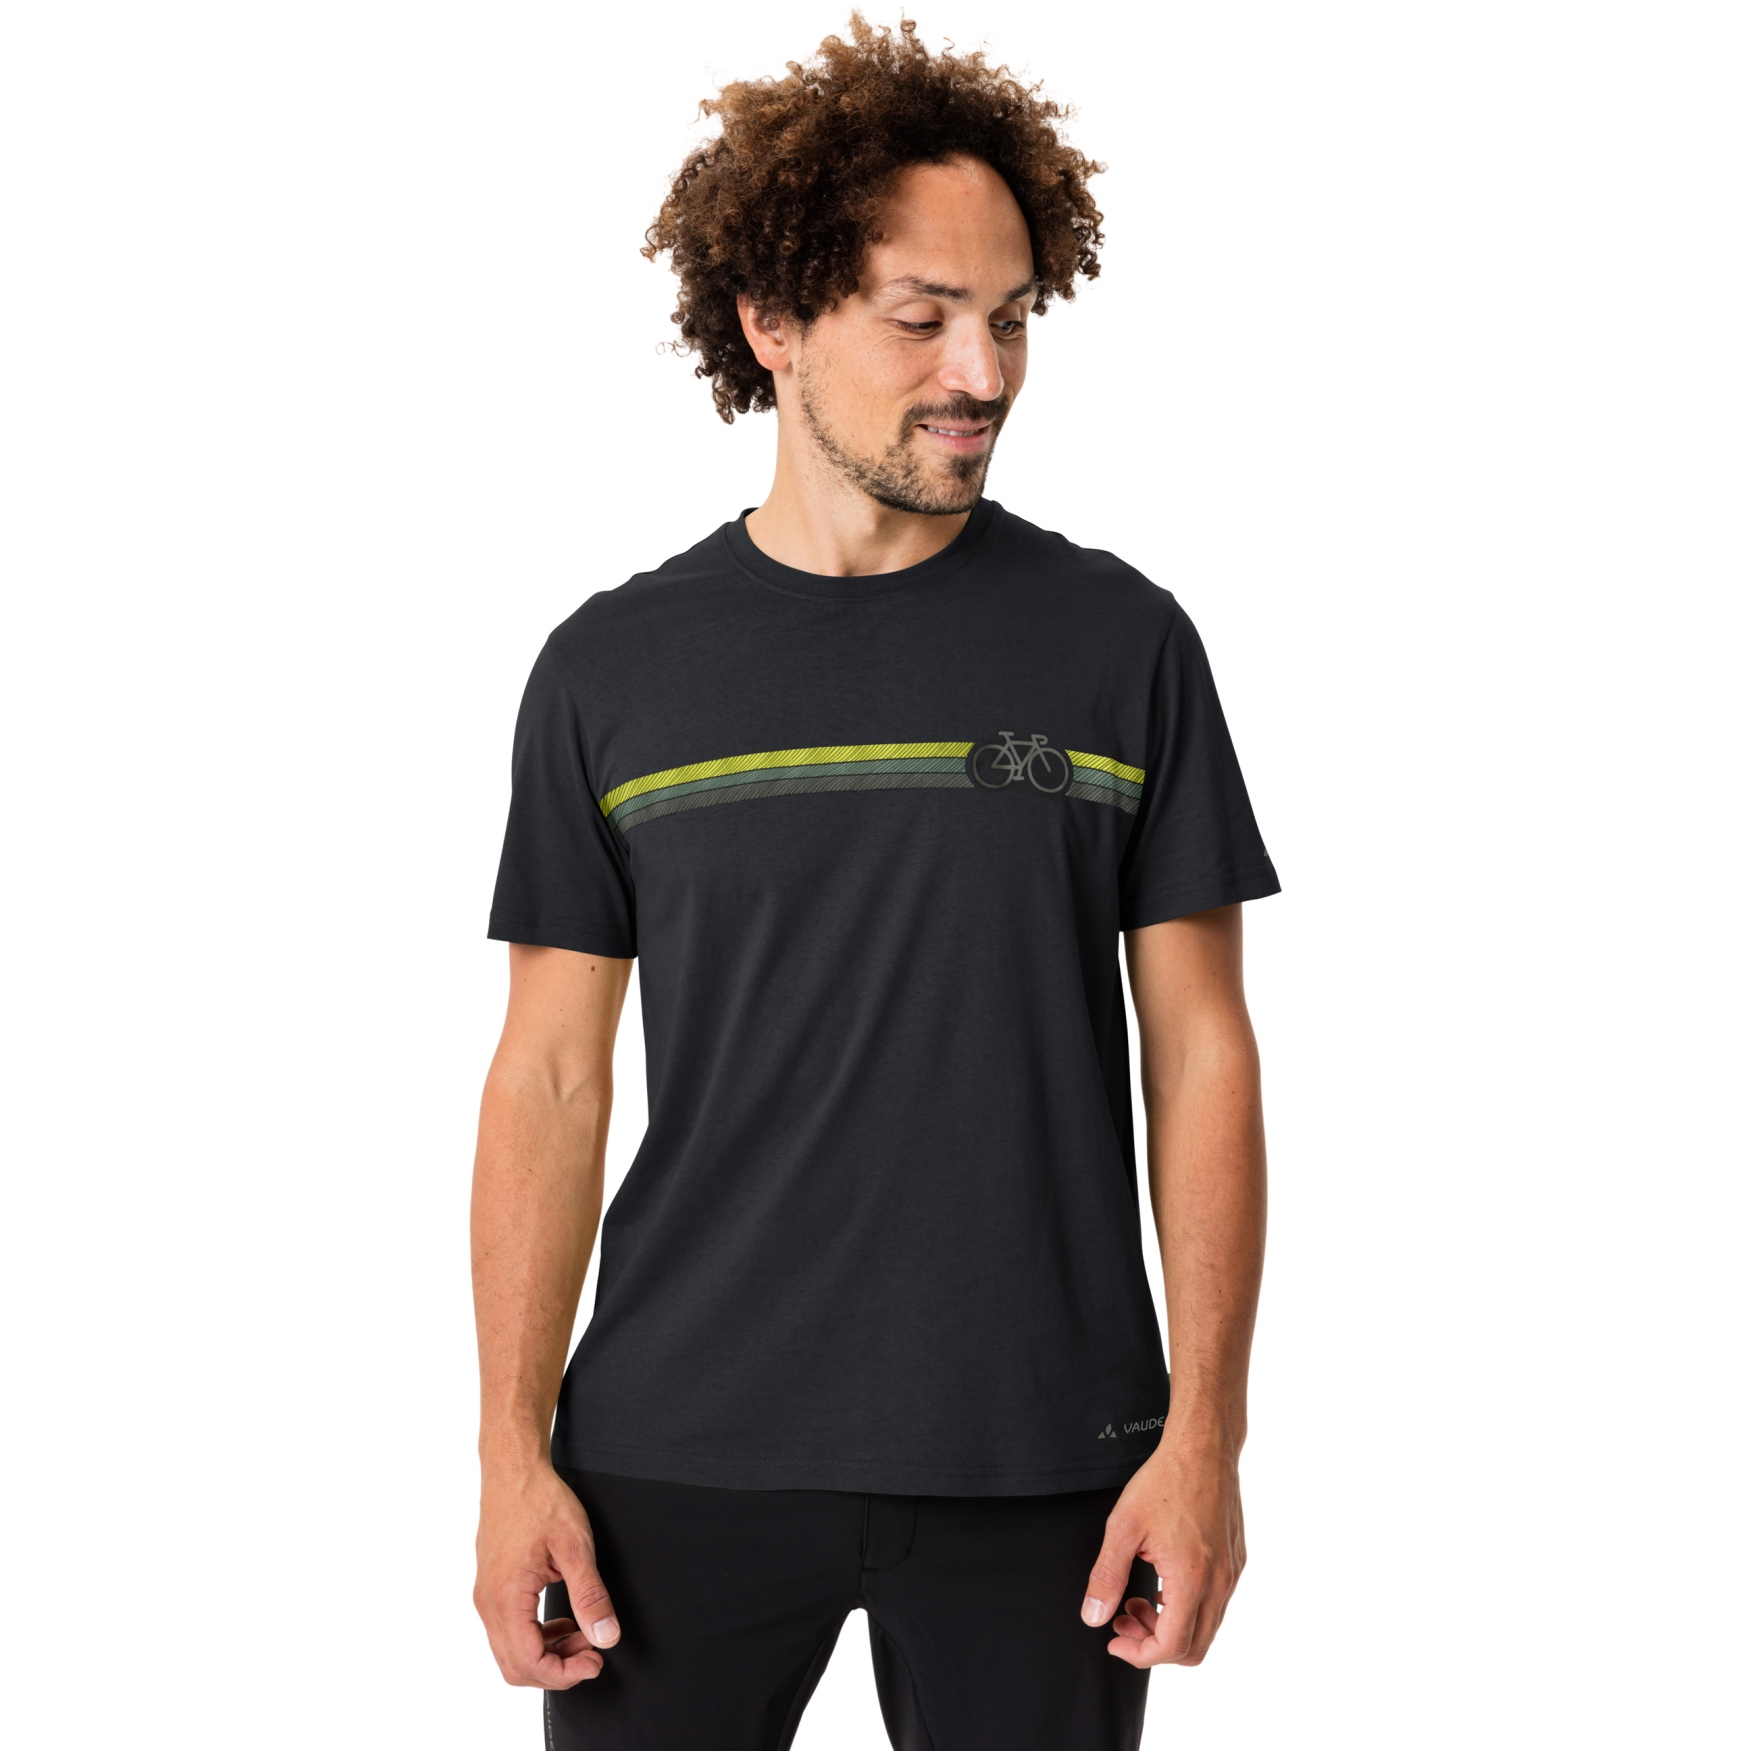 Produktbild von Vaude Cyclist V T-Shirt Herren - schwarz uni